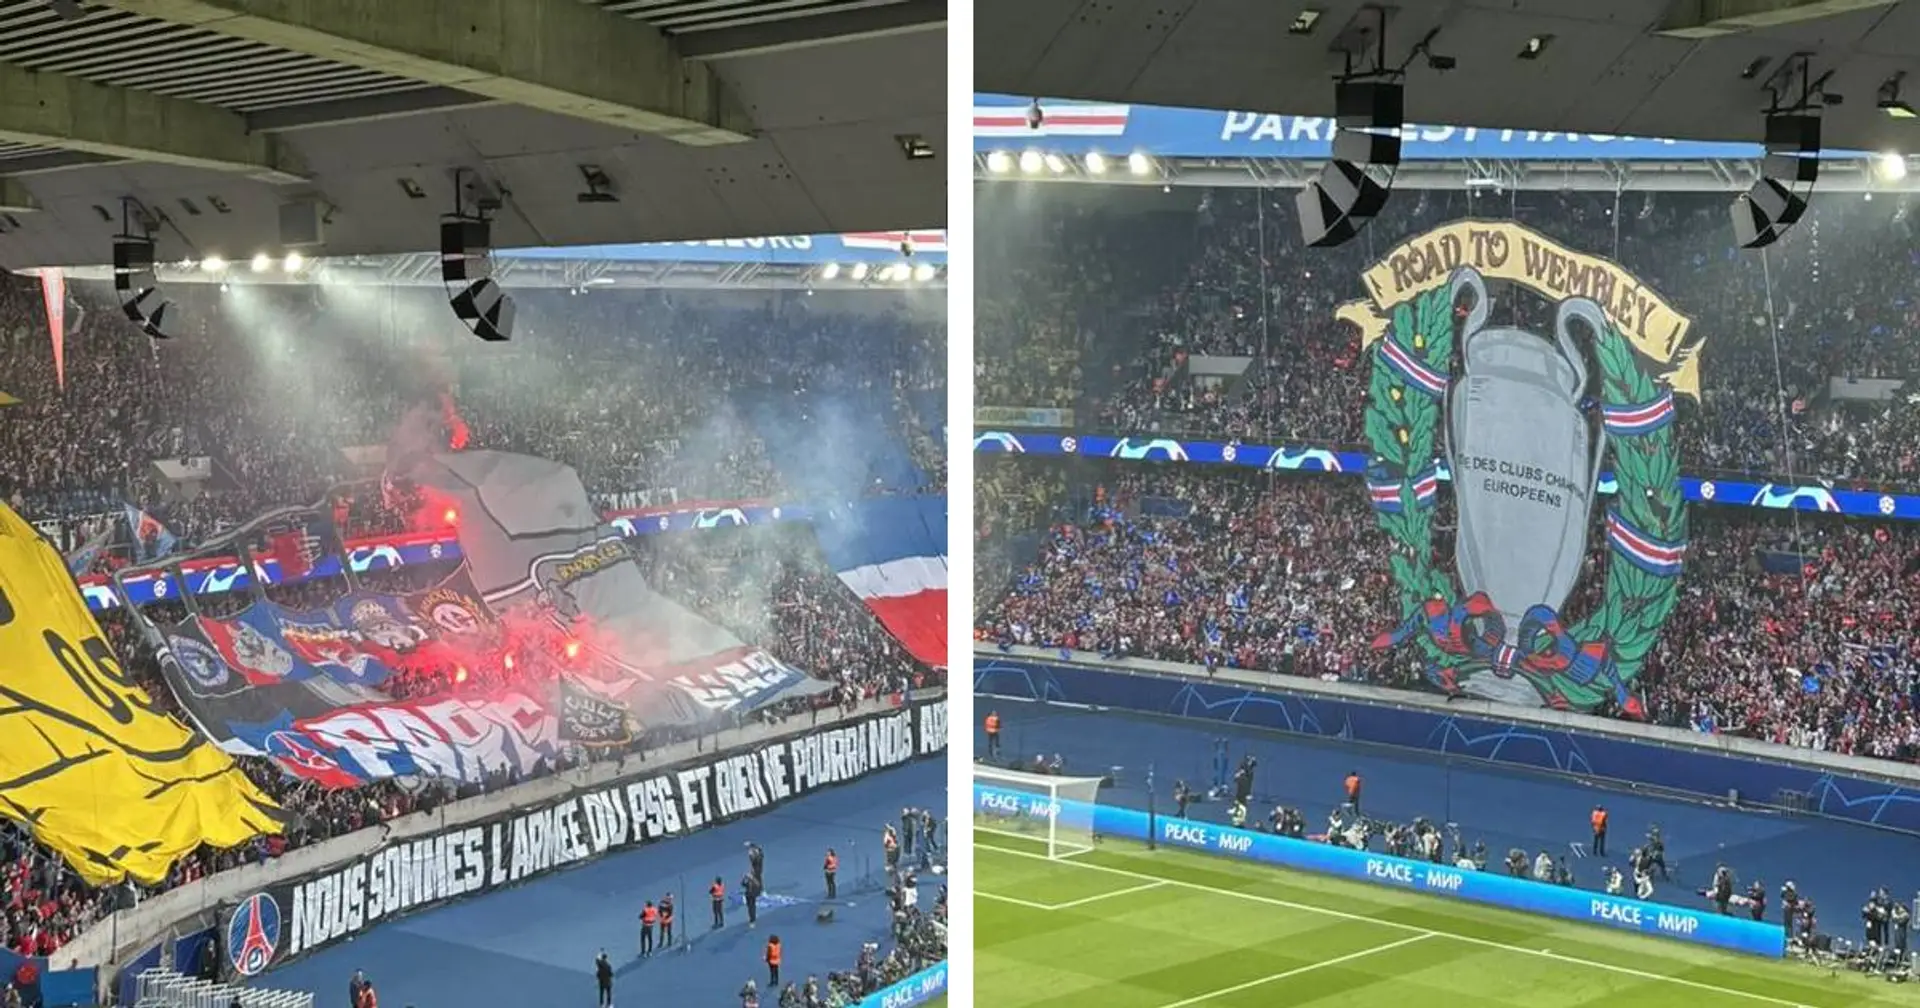 La performance XXL des fans du PSG vs Dortmund en 4 images